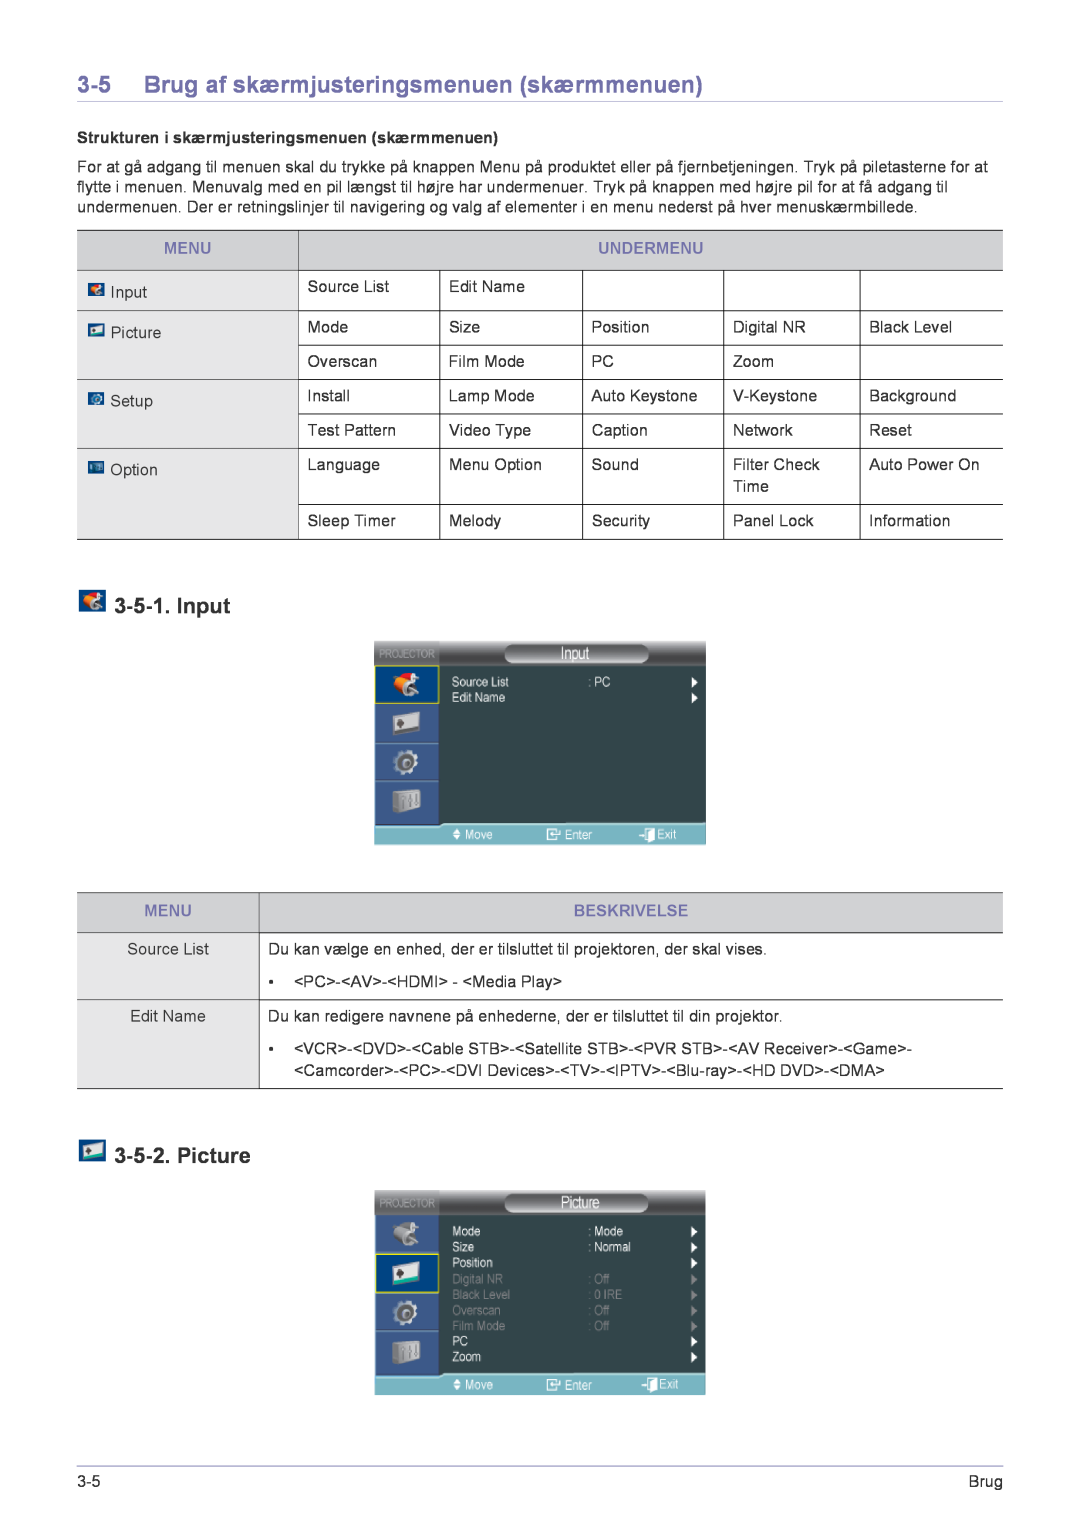 Samsung SP2553XWCX/EN manual Brug af skærmjusteringsmenuen skærmmenuen, Input, Picture 